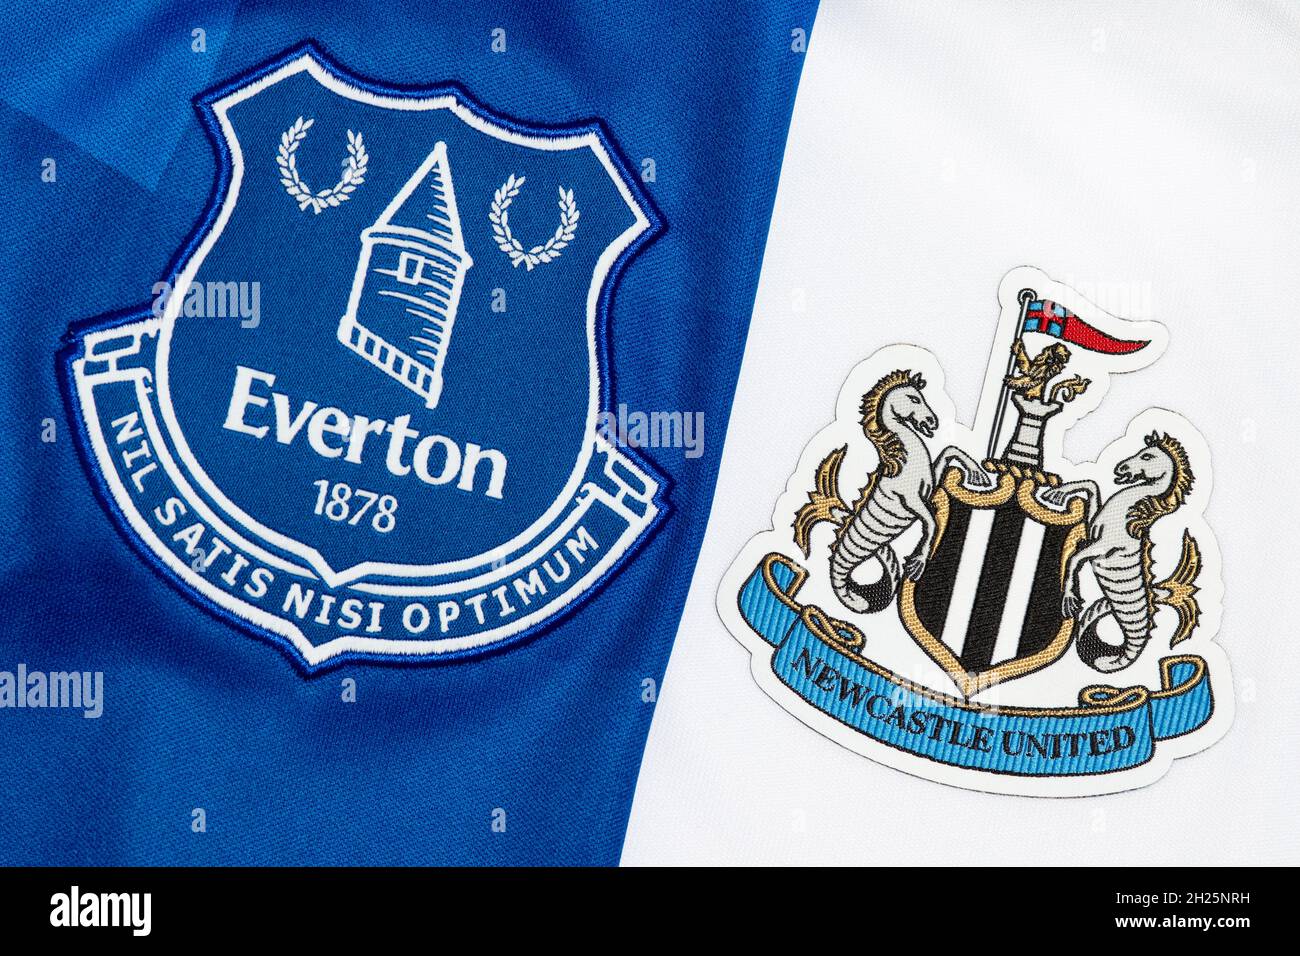 Primer plano de Everton & Newcastle United Club Crest Foto de stock